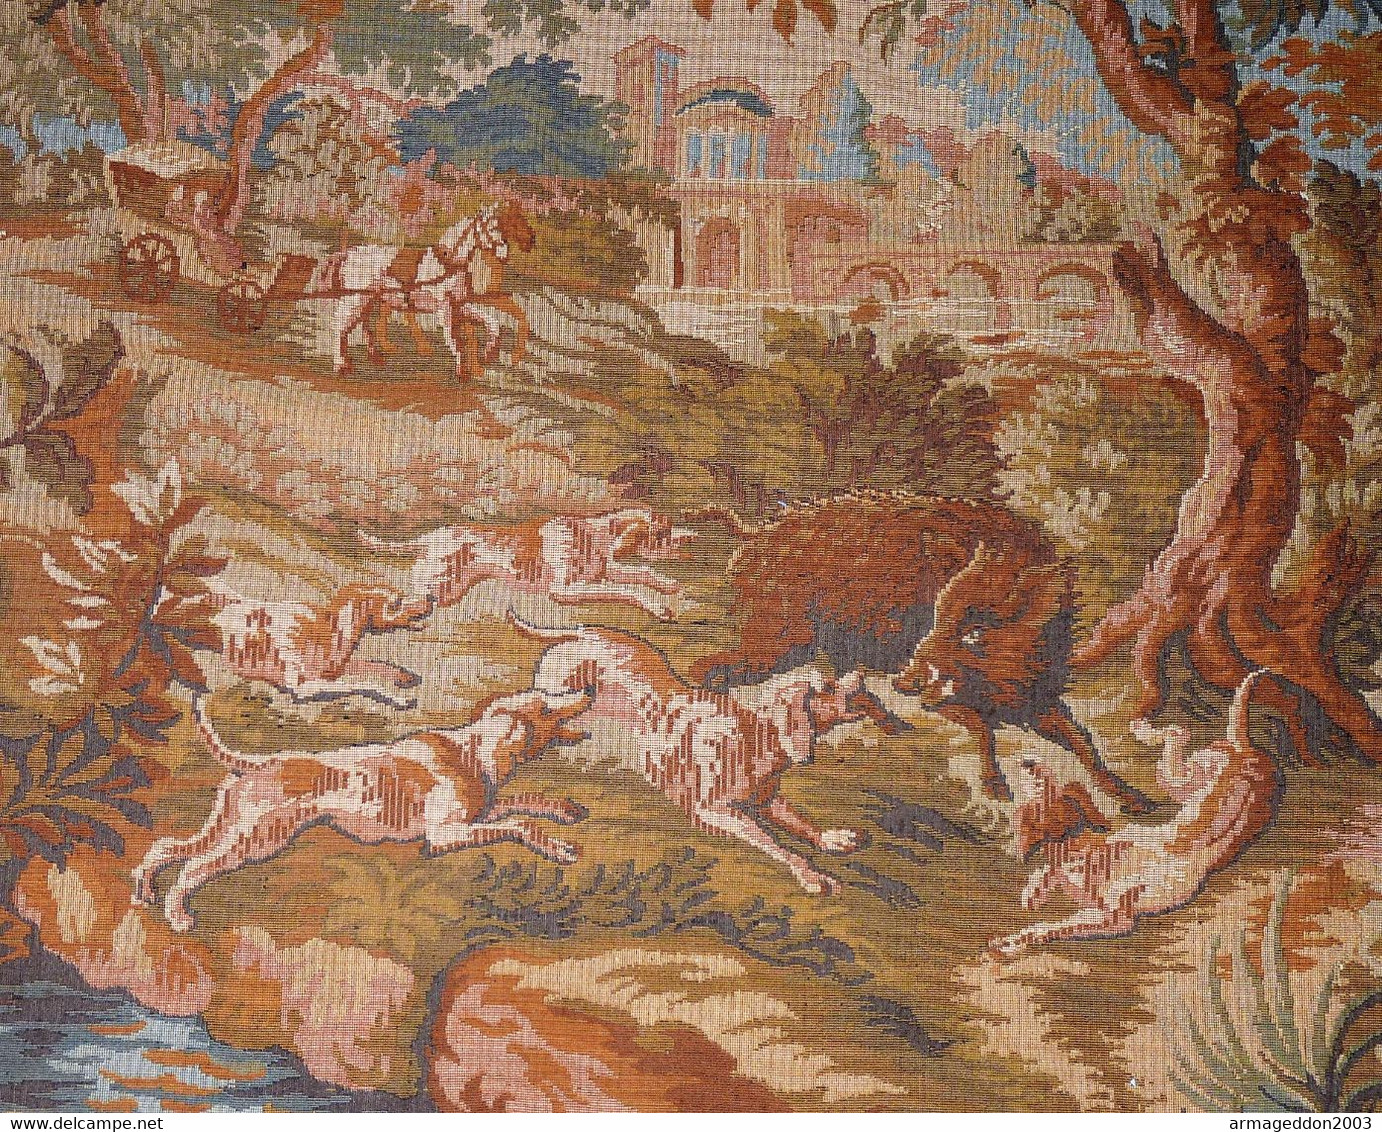 ANCIENNE TAPISSERIE GOBLYS SCENE DE CHASSE AU SANGLIER Tissée Jacquard 152X72 CM - Rugs, Carpets & Tapestry